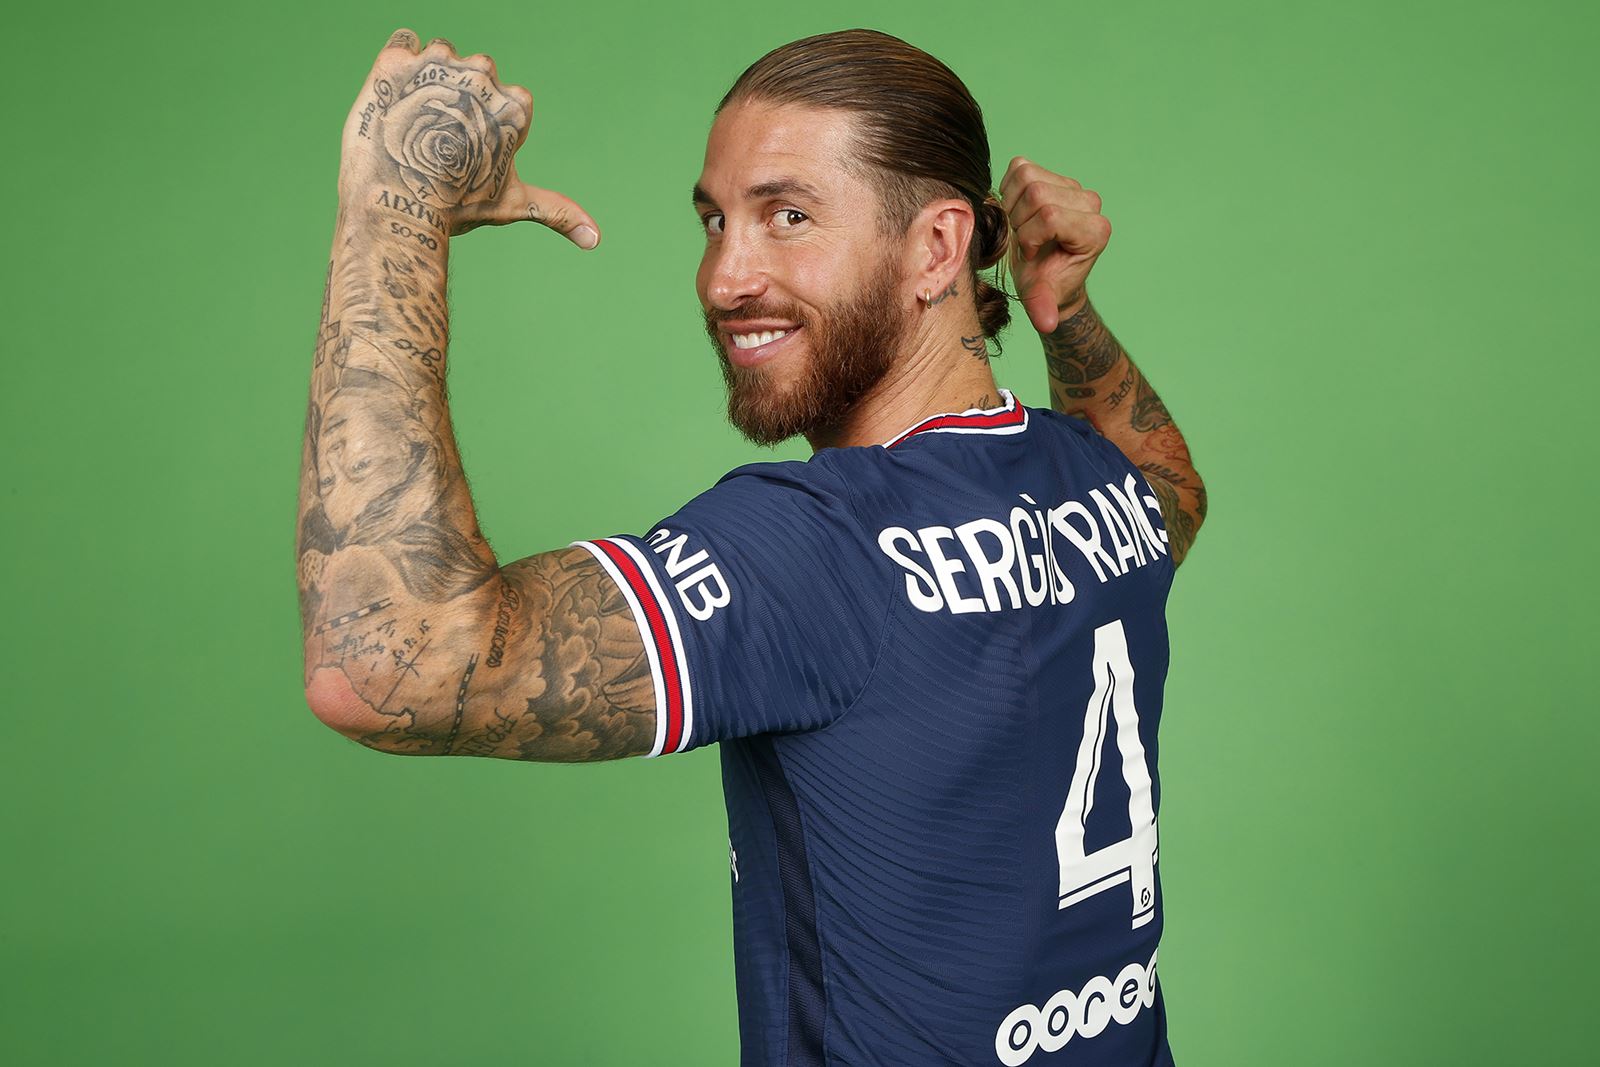 Sergio Ramos, lăsat pe dinafară la primul meci la Paris Saint Germain! De ce nu l-a convocat Pochettino